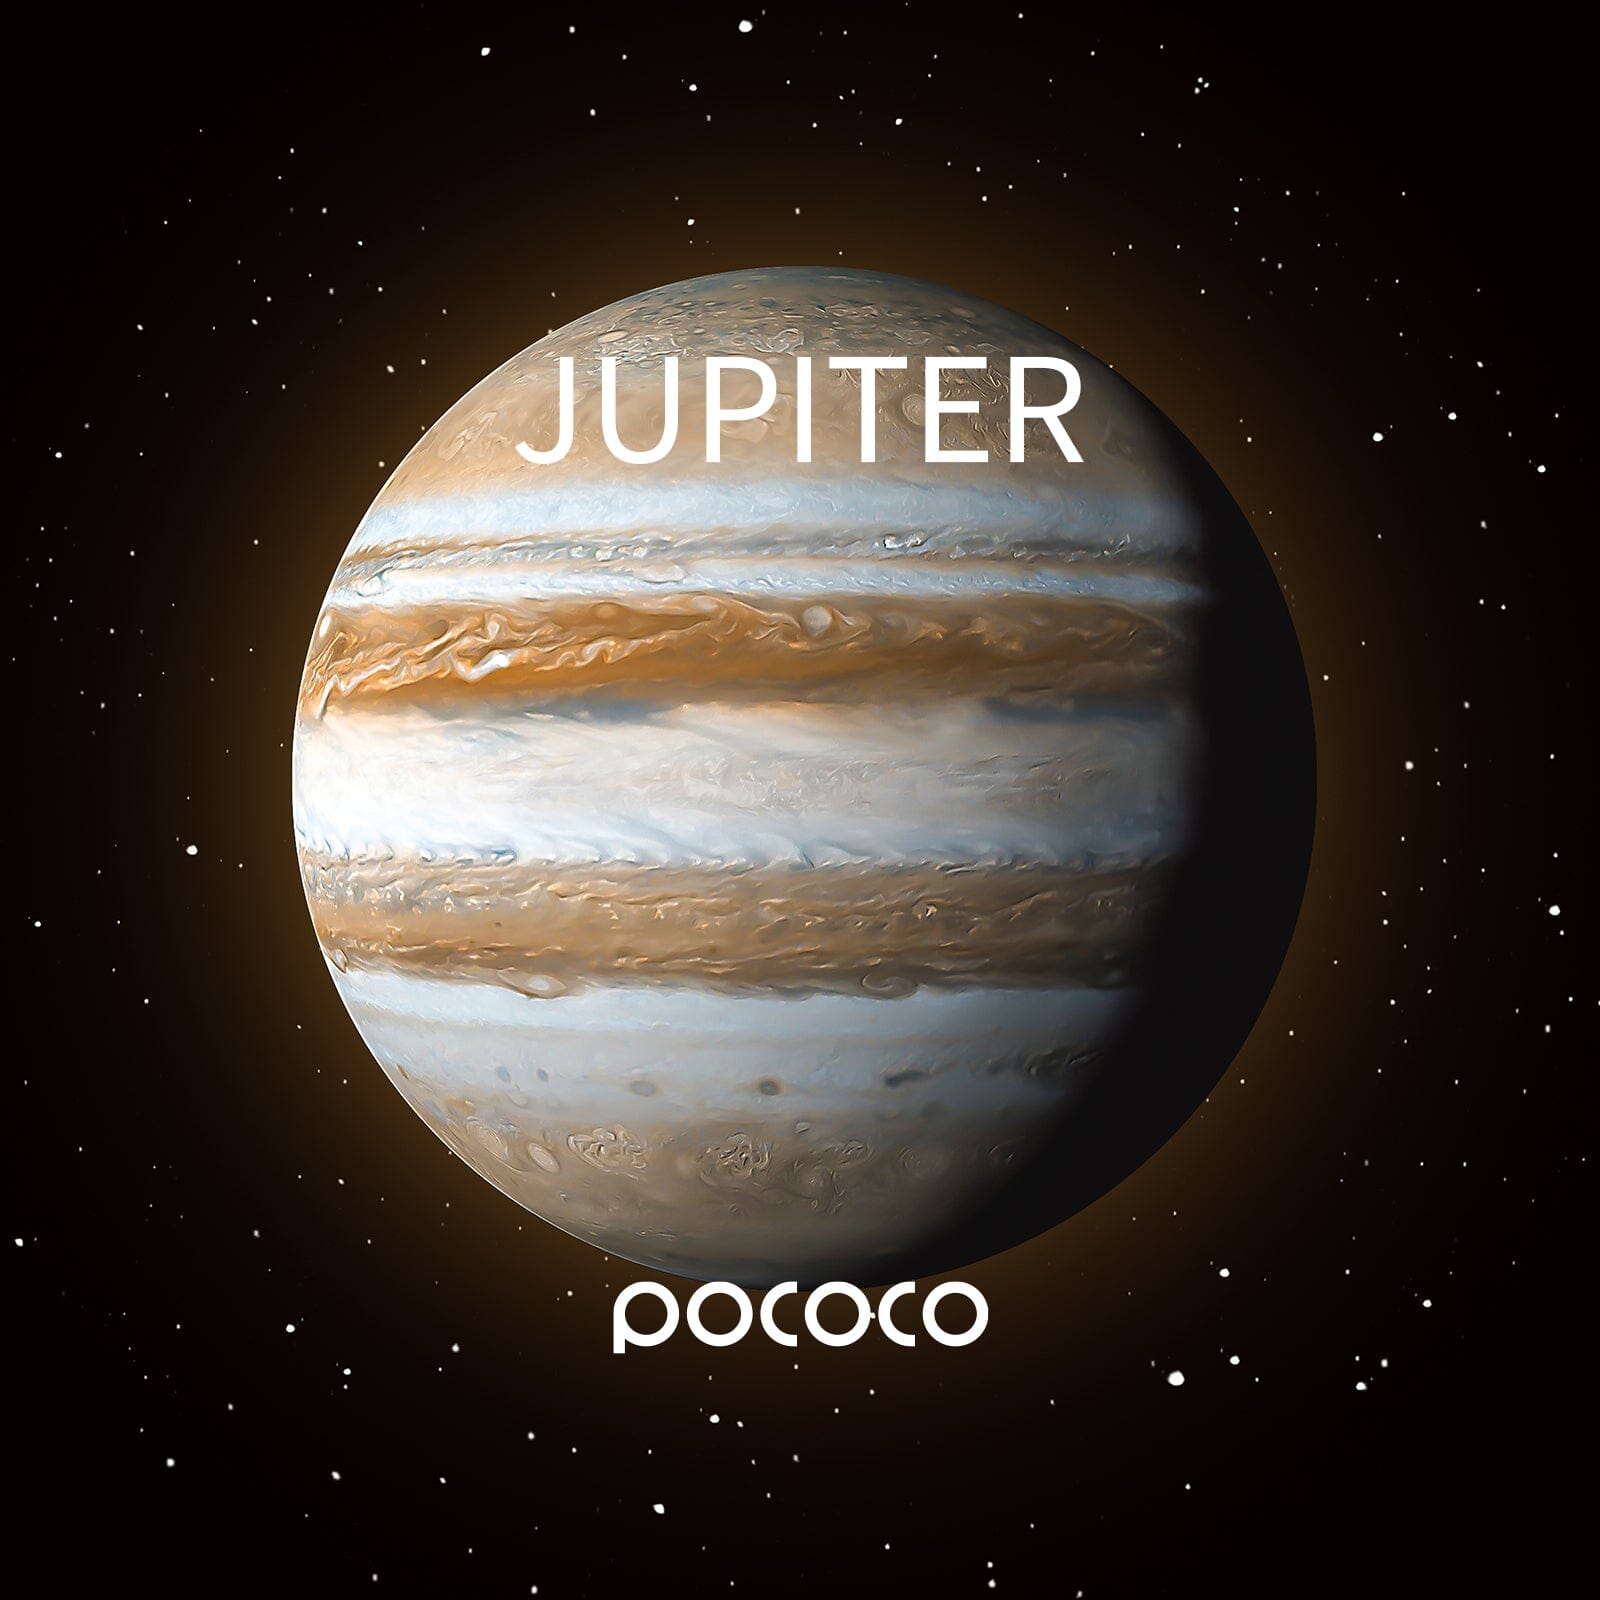 POCOCO Galaxy Projector Disc - Jupter